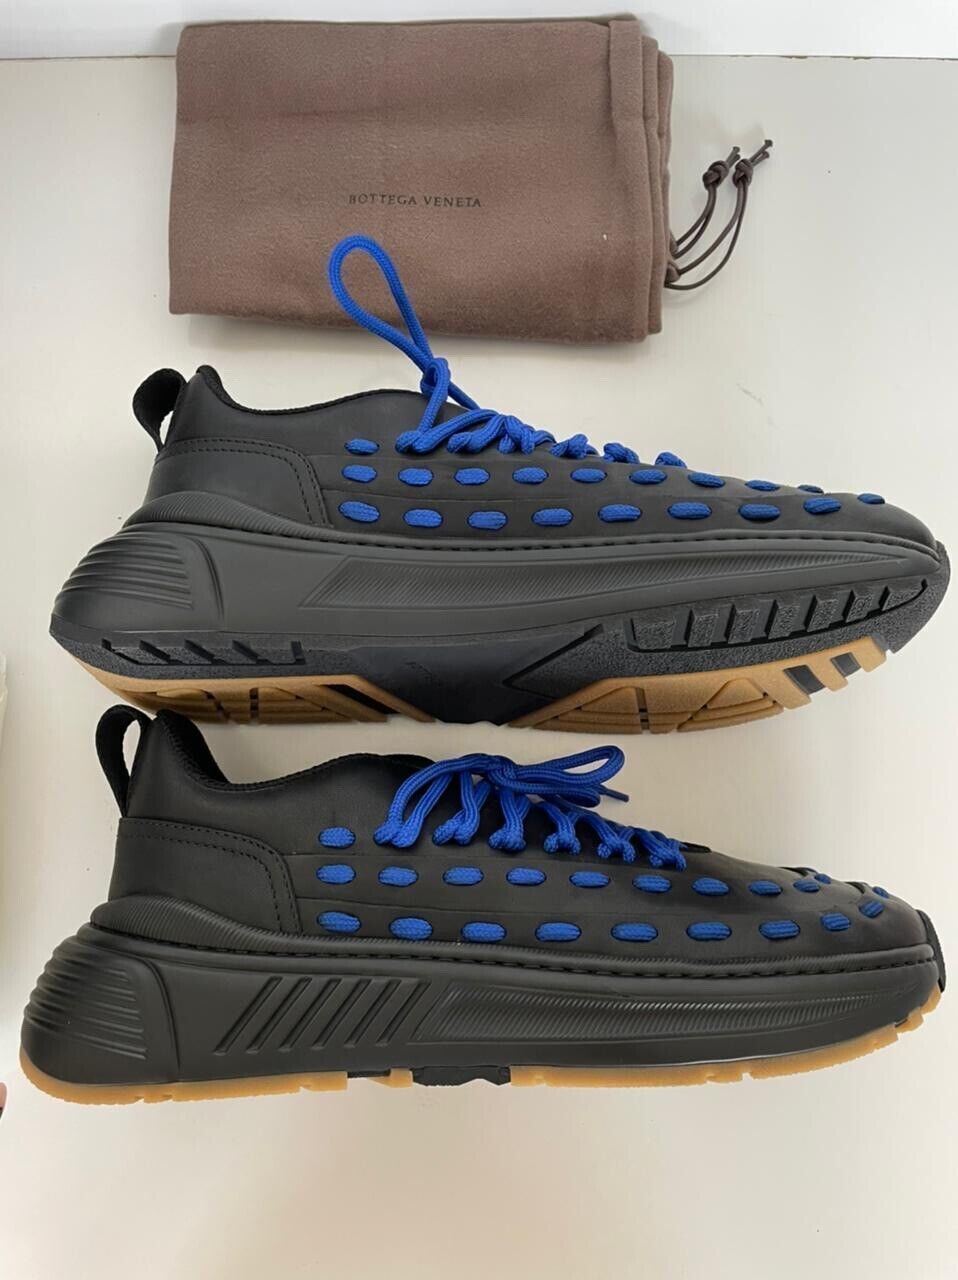 Мужские кожаные черные/синие кроссовки Bottega Veneta 950 долларов США 8,5 США 578305 1014 